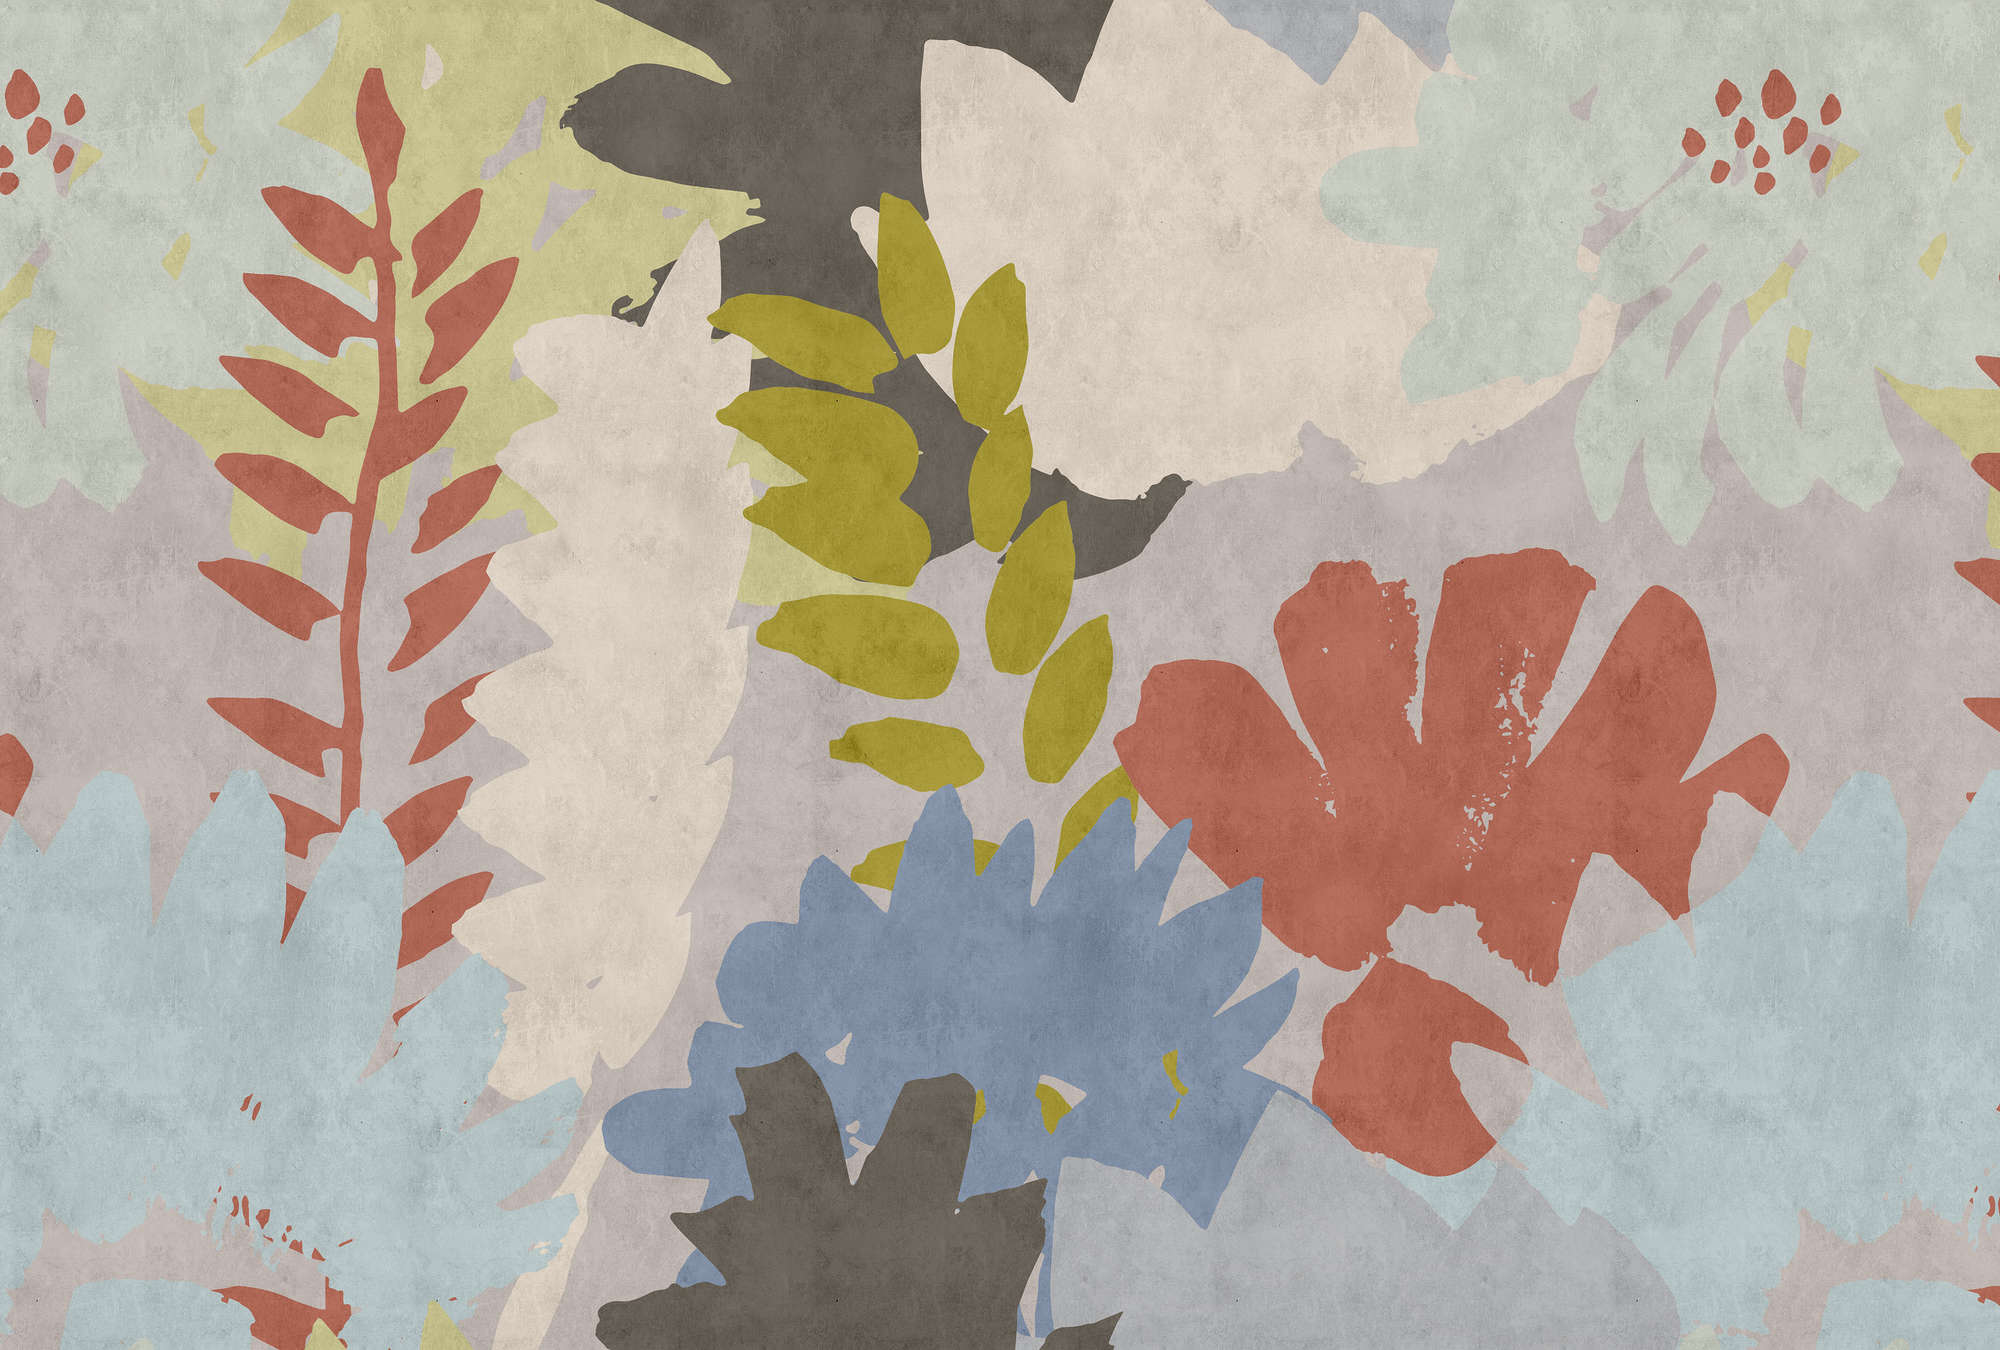             Collage Floral 3 - Papel pintado abstracto en estructura de papel secante con motivo de hojas - Azul, Crema | Perla liso no tejido
        